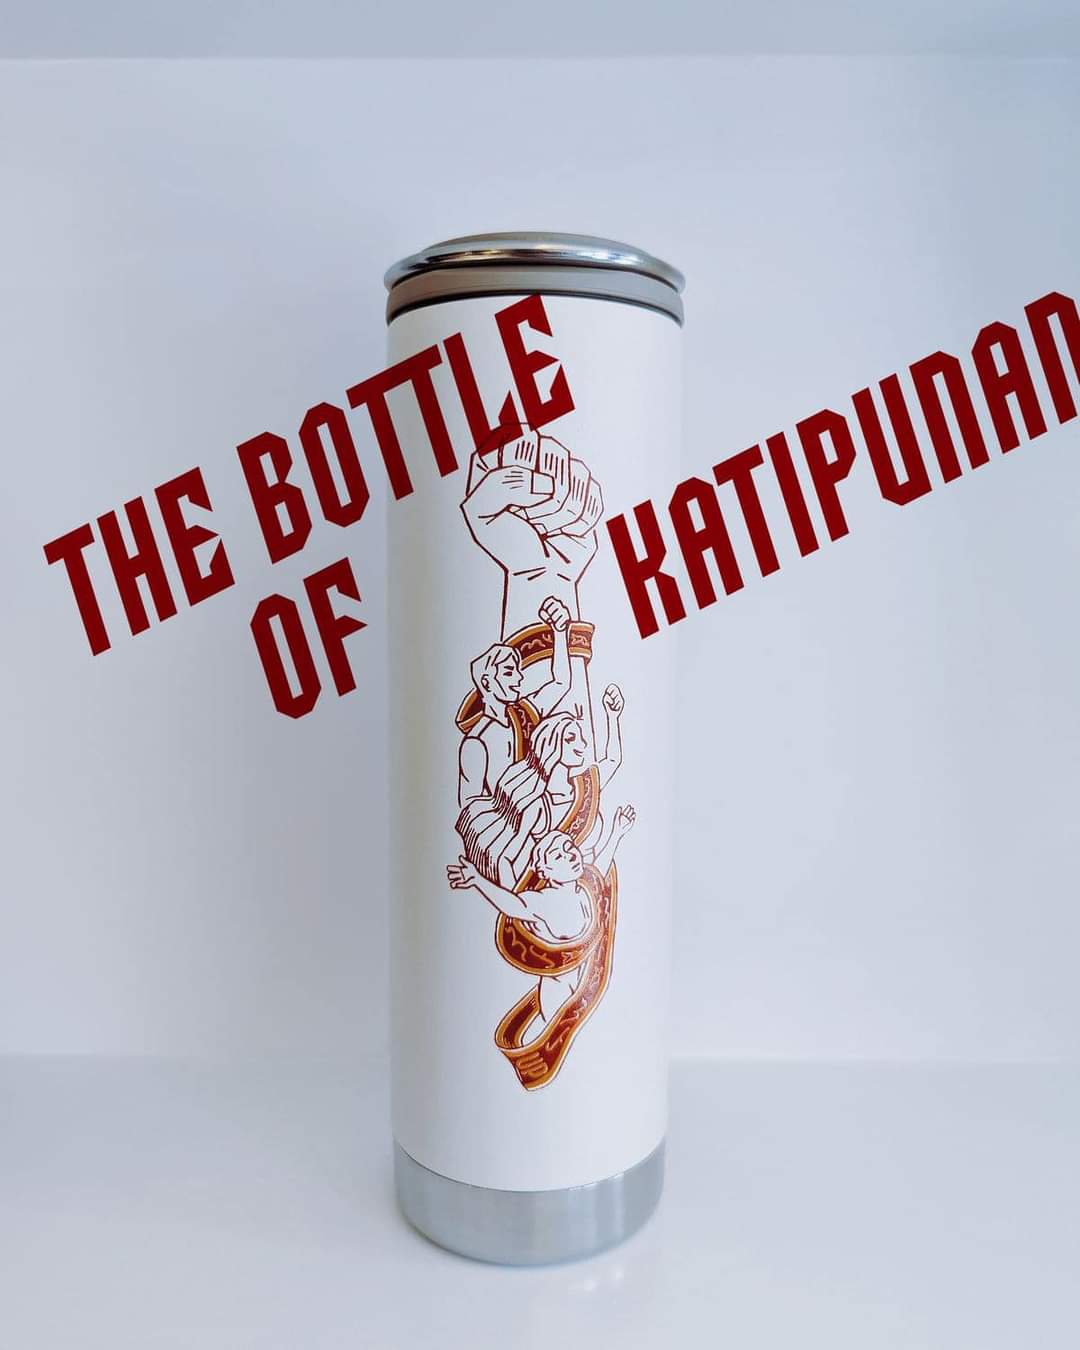 Bottle of Katipunan